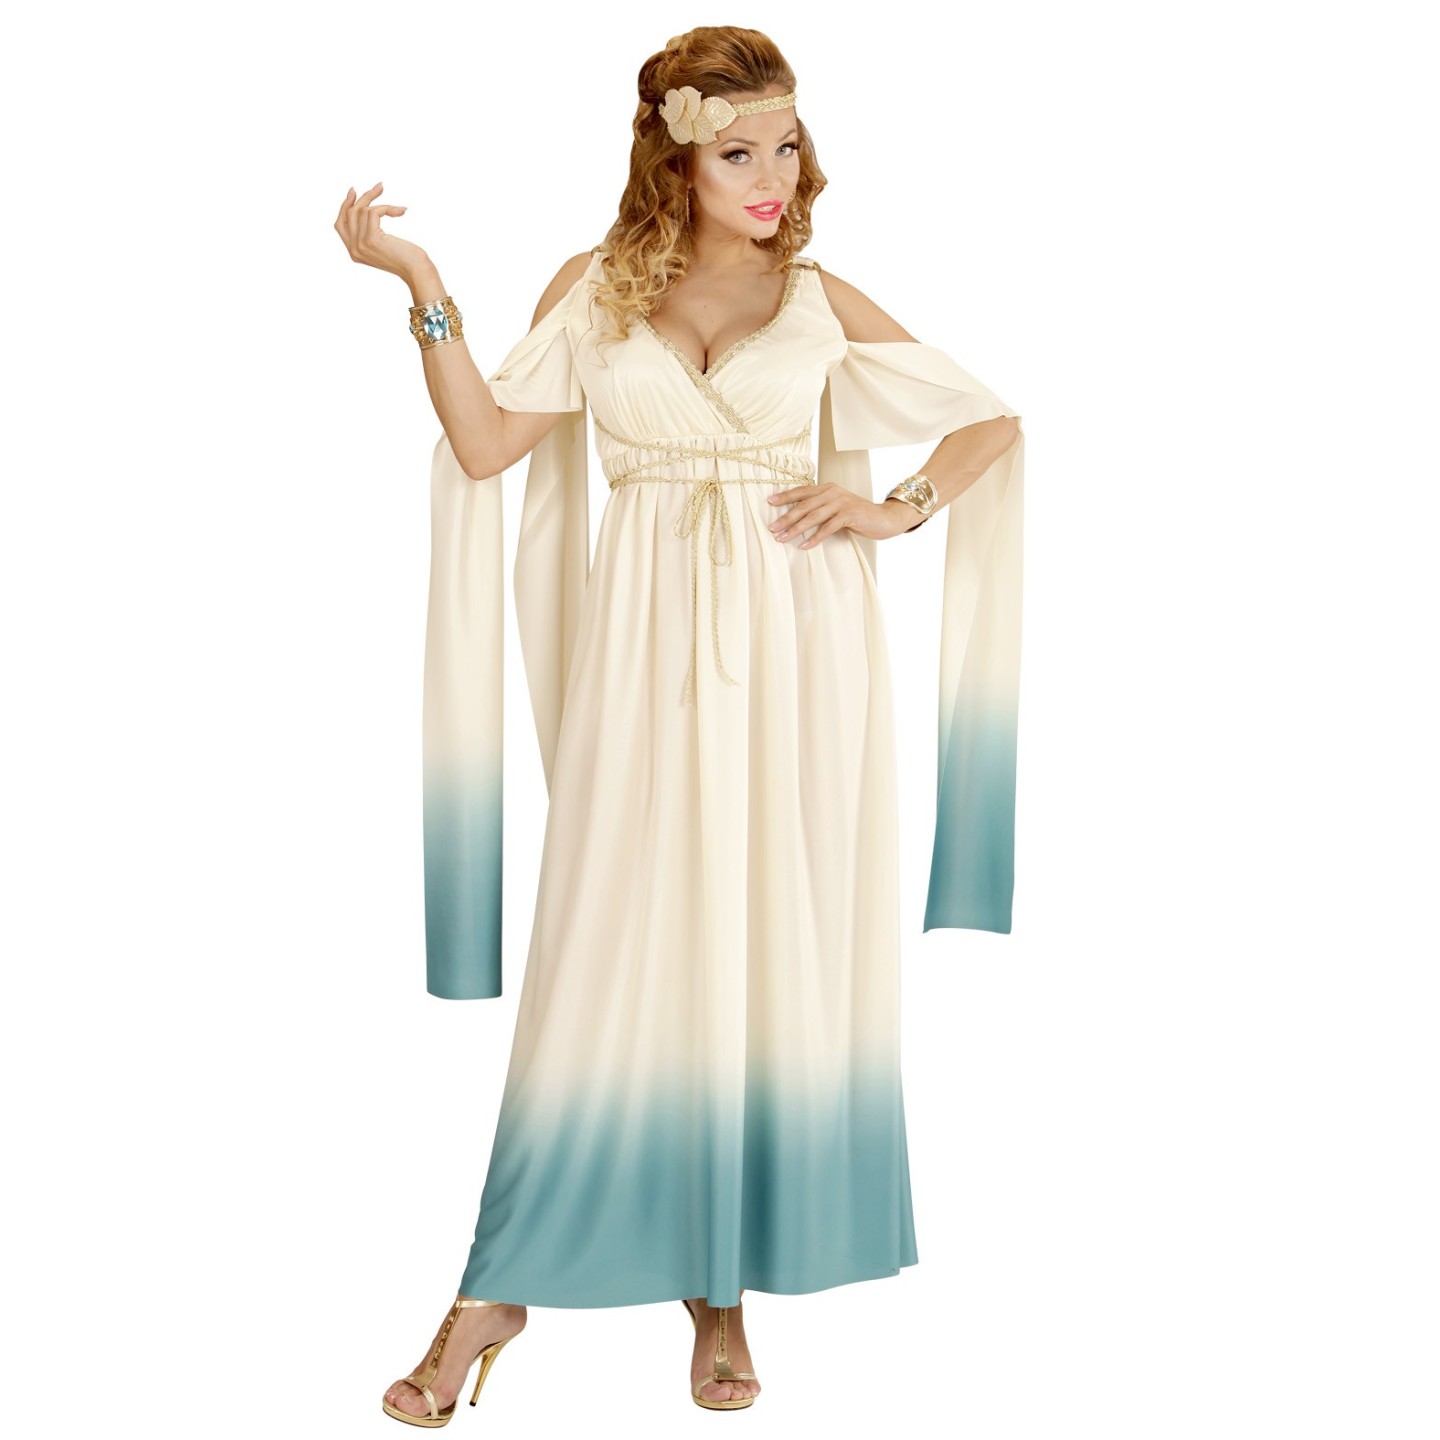 slang Recreatie controller Griekse jurk kopen voor carnaval ? | Jokershop.be - Griekse kleding